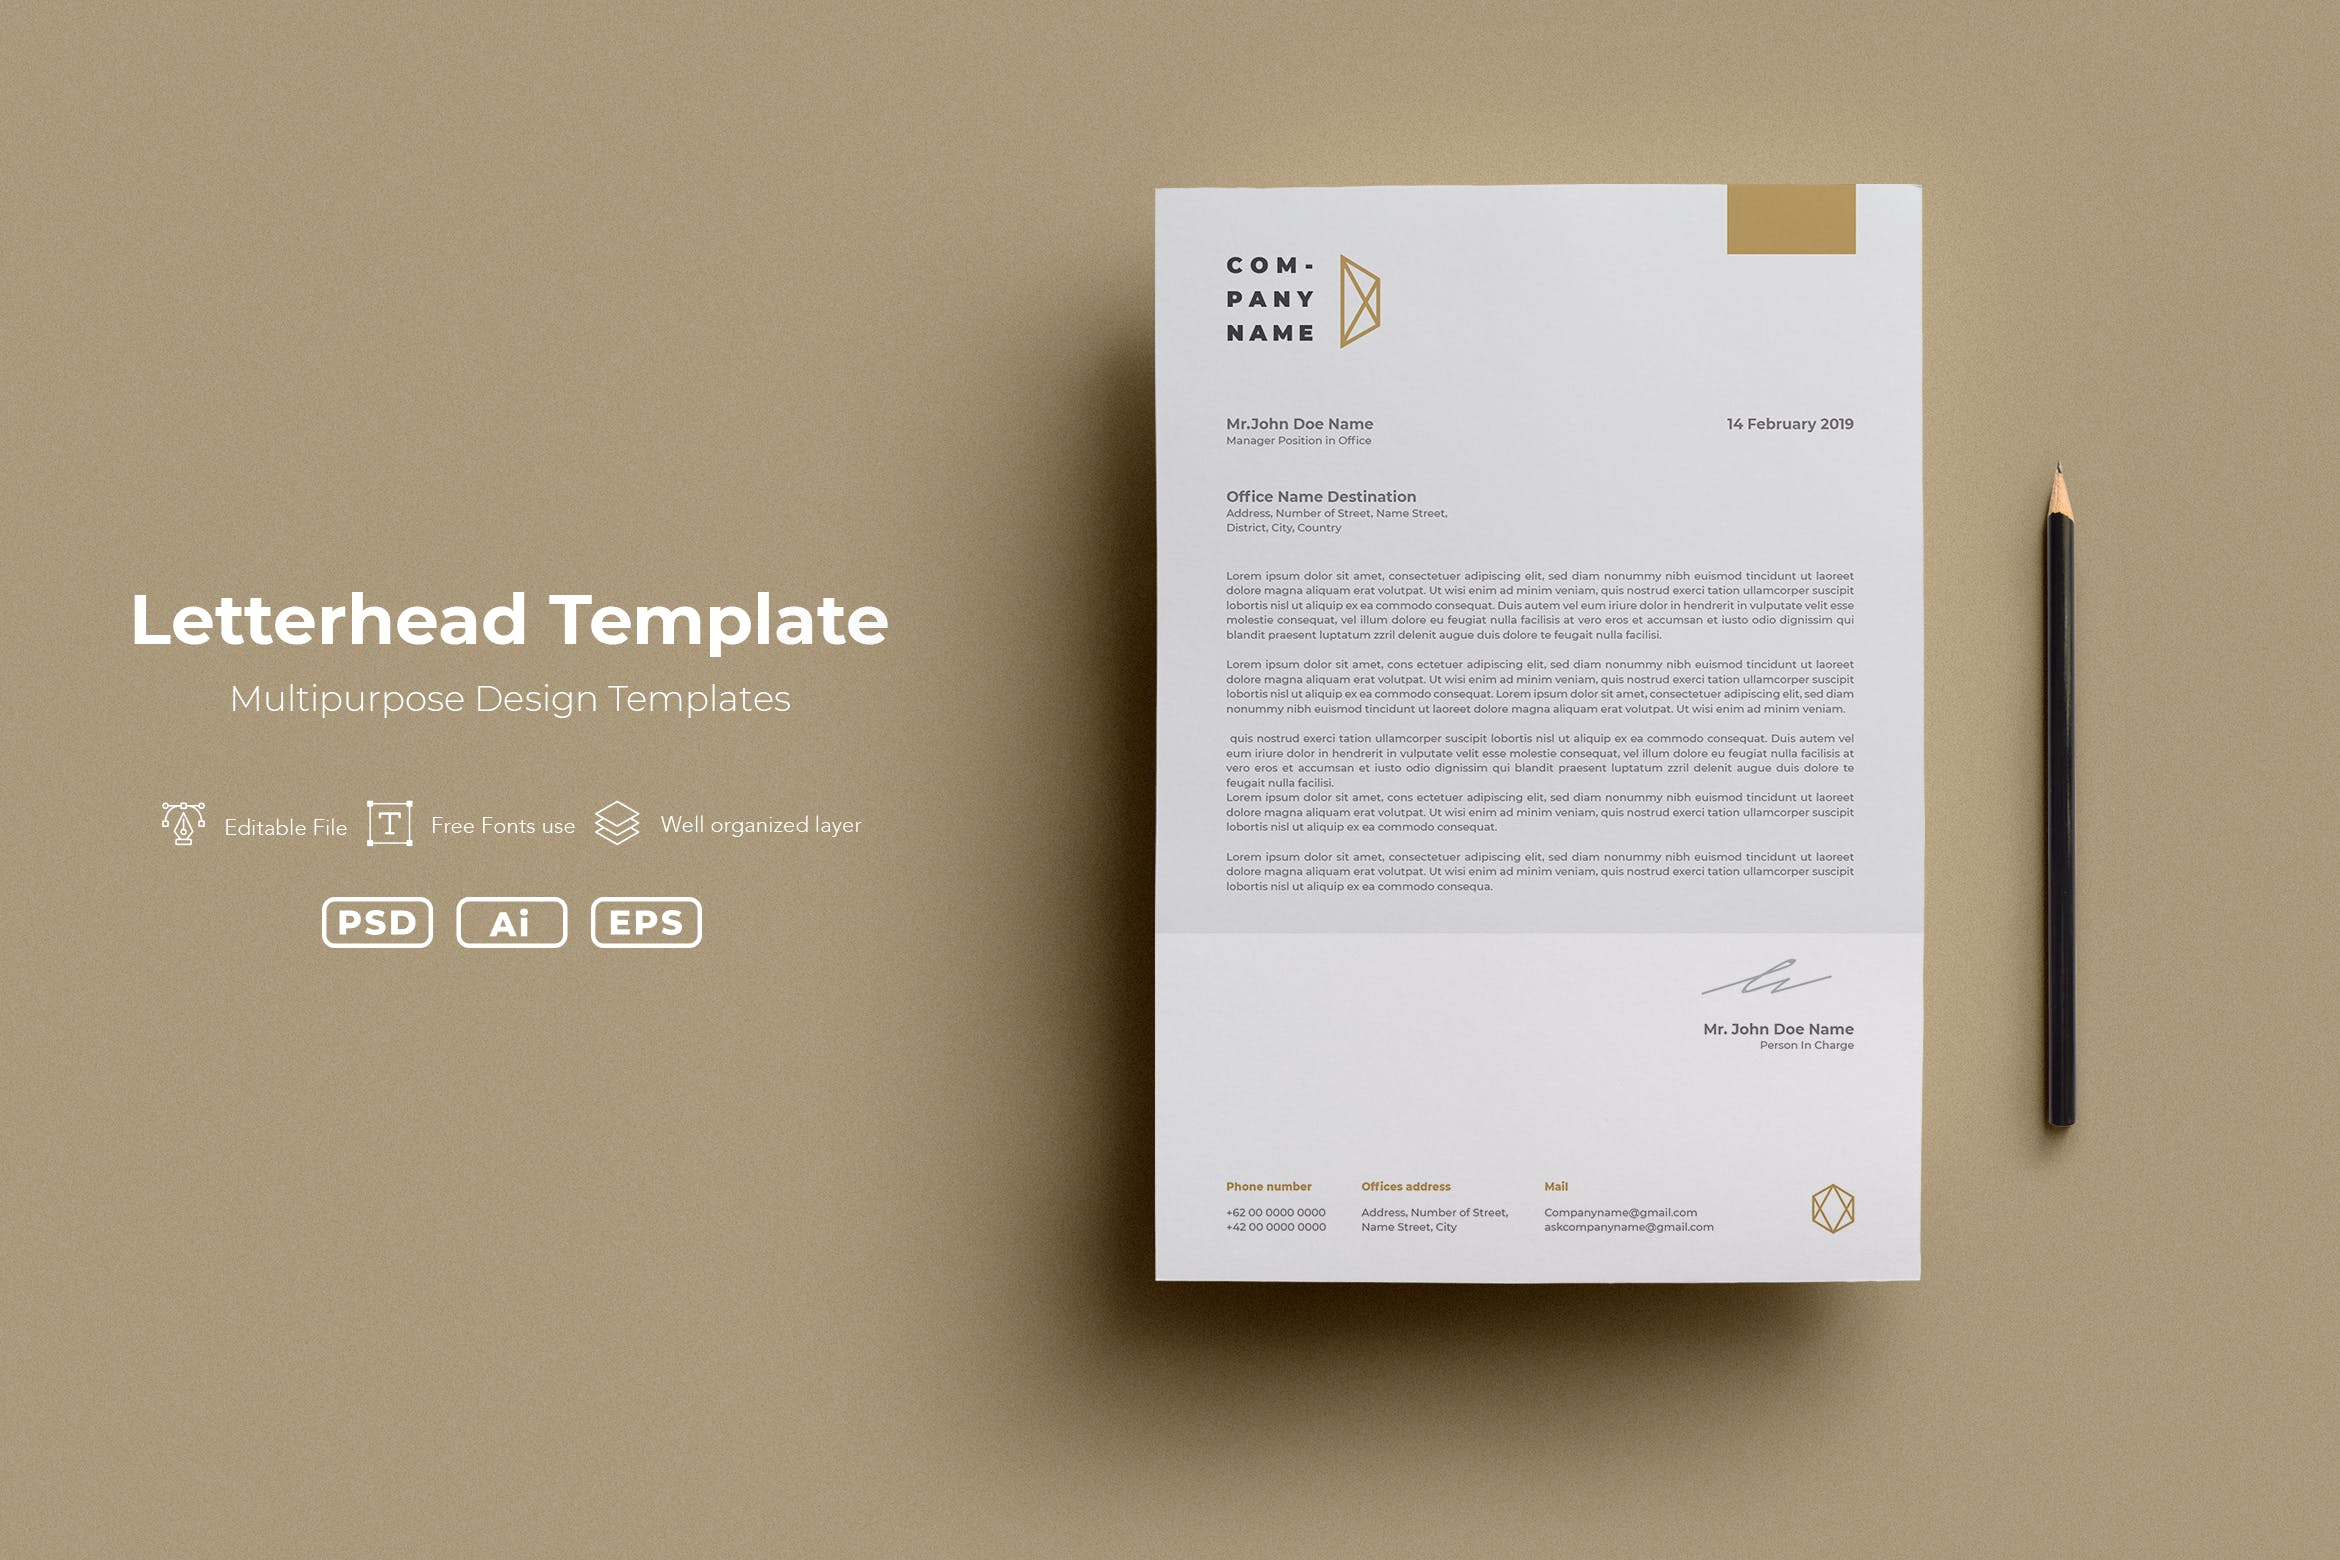 极简设计风格企业品牌信纸设计模板v61 SRTP- Letterhead Template.61插图